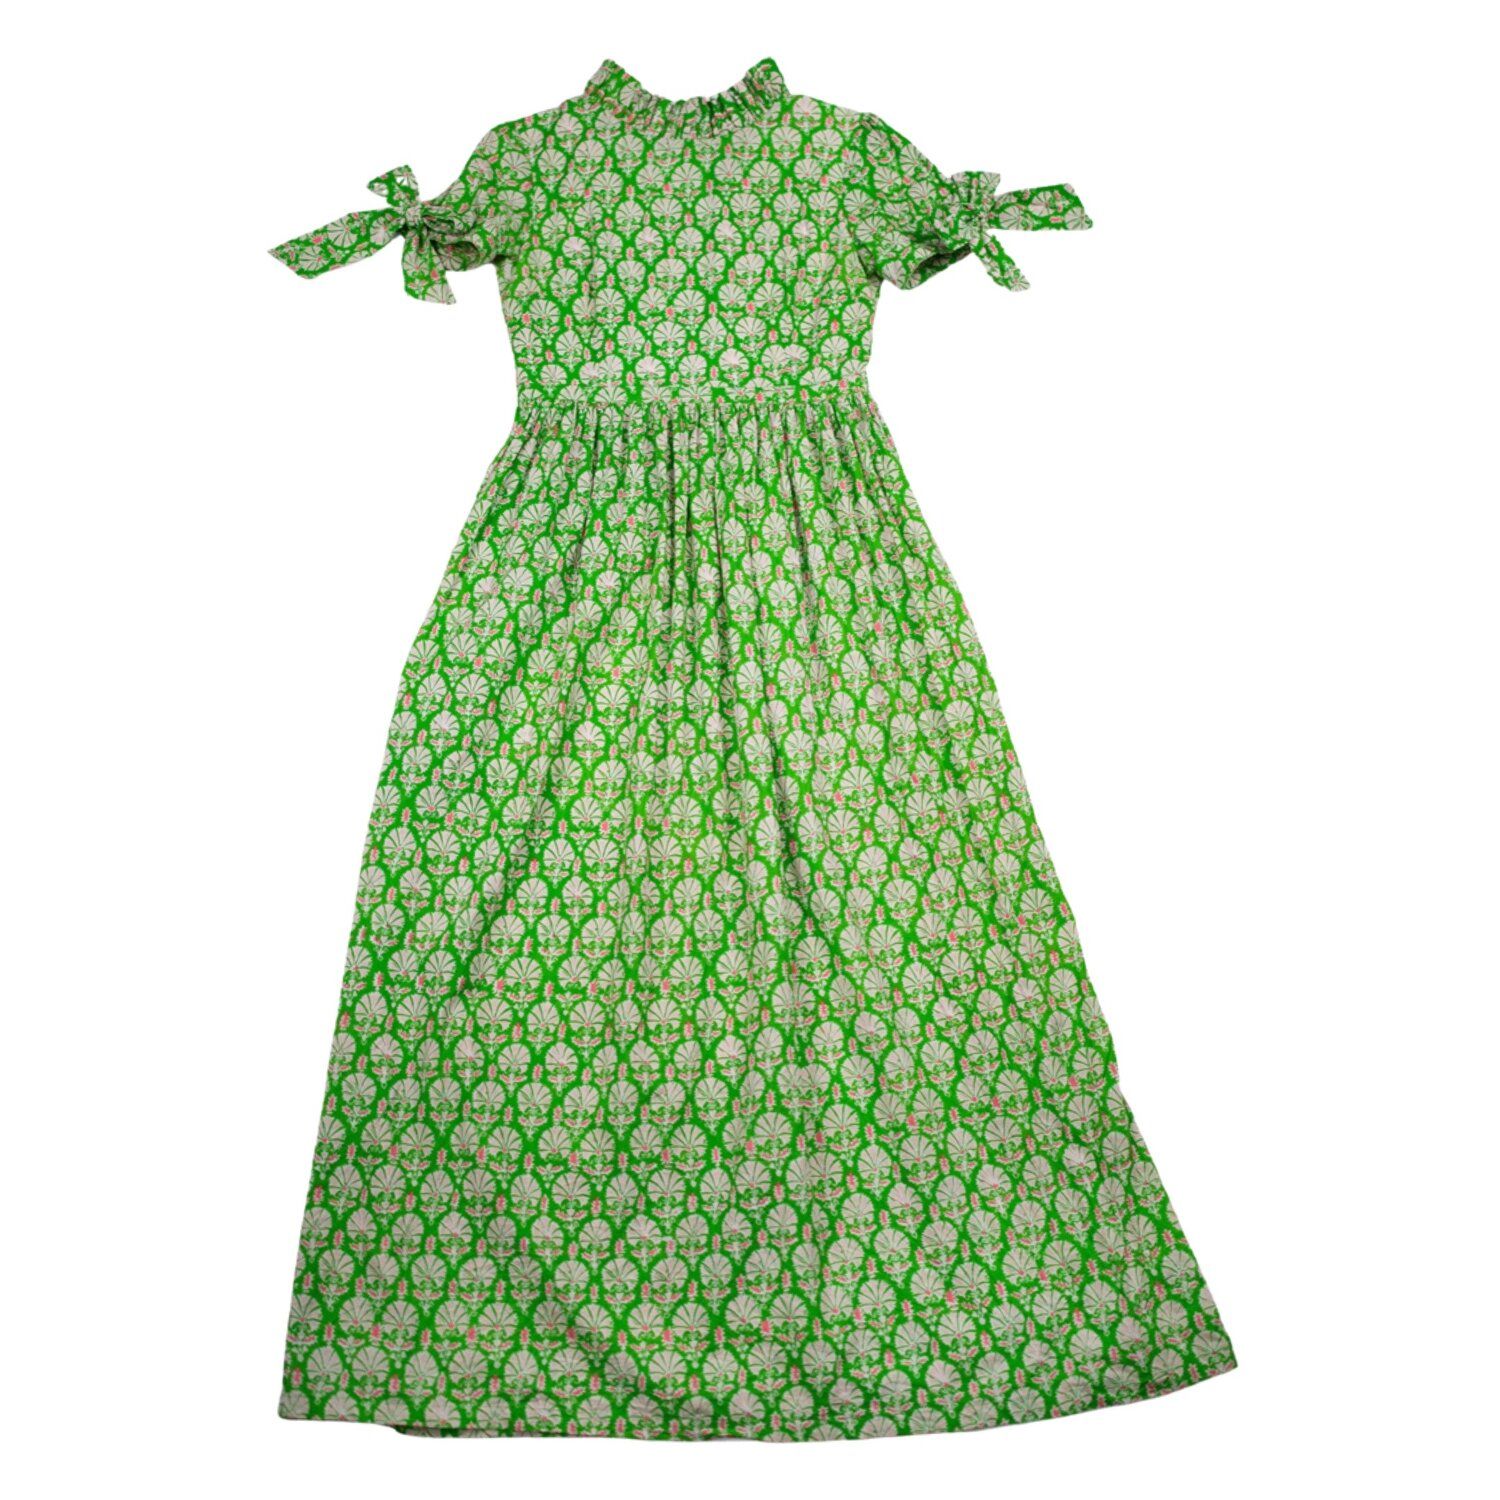 Judy Lanien Maxi Dress in flower motif print — Elizabeth Wilson | Elizabeth Wilson Designs